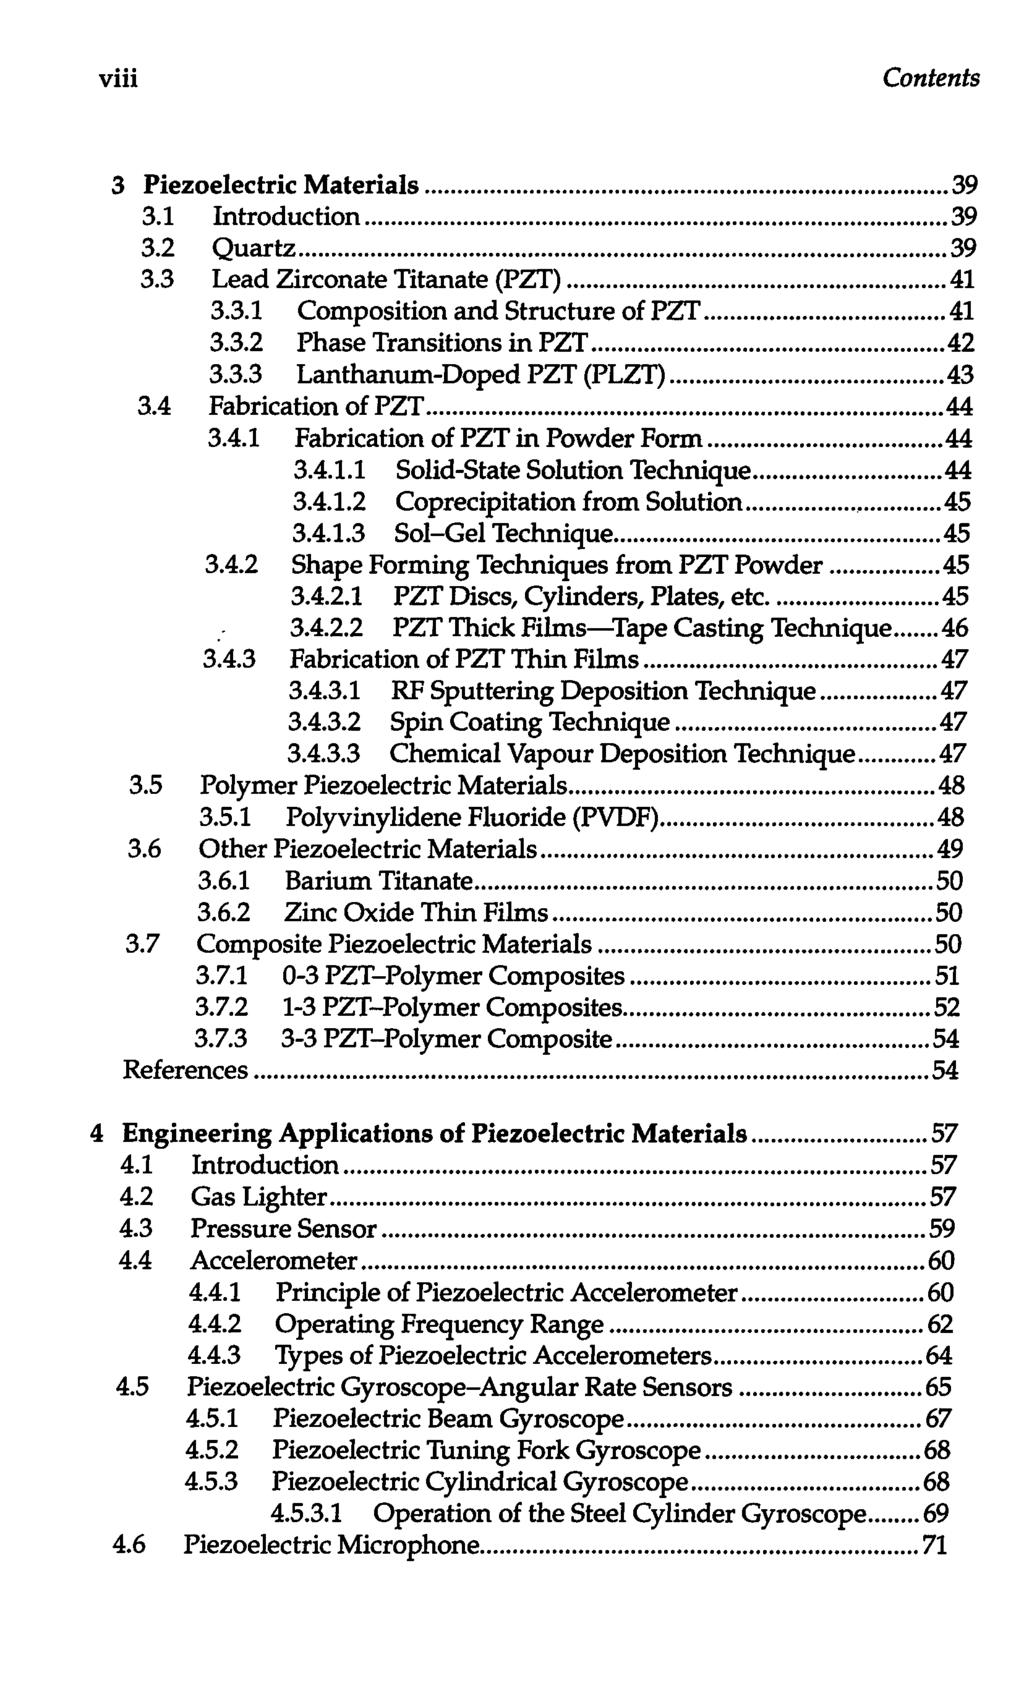 viii Contents 3 Piezoelectric Materials 39 3.1 Introduction 39 3.2 Quartz 39 3.3 Lead Zirconate Titanate (PZT) 41 3.3.1 Composition and Structure of PZT 41 3.3.2 Phase Transitions in PZT 42 3.3.3 Lanthanum-Doped PZT (PLZT) 43 3.